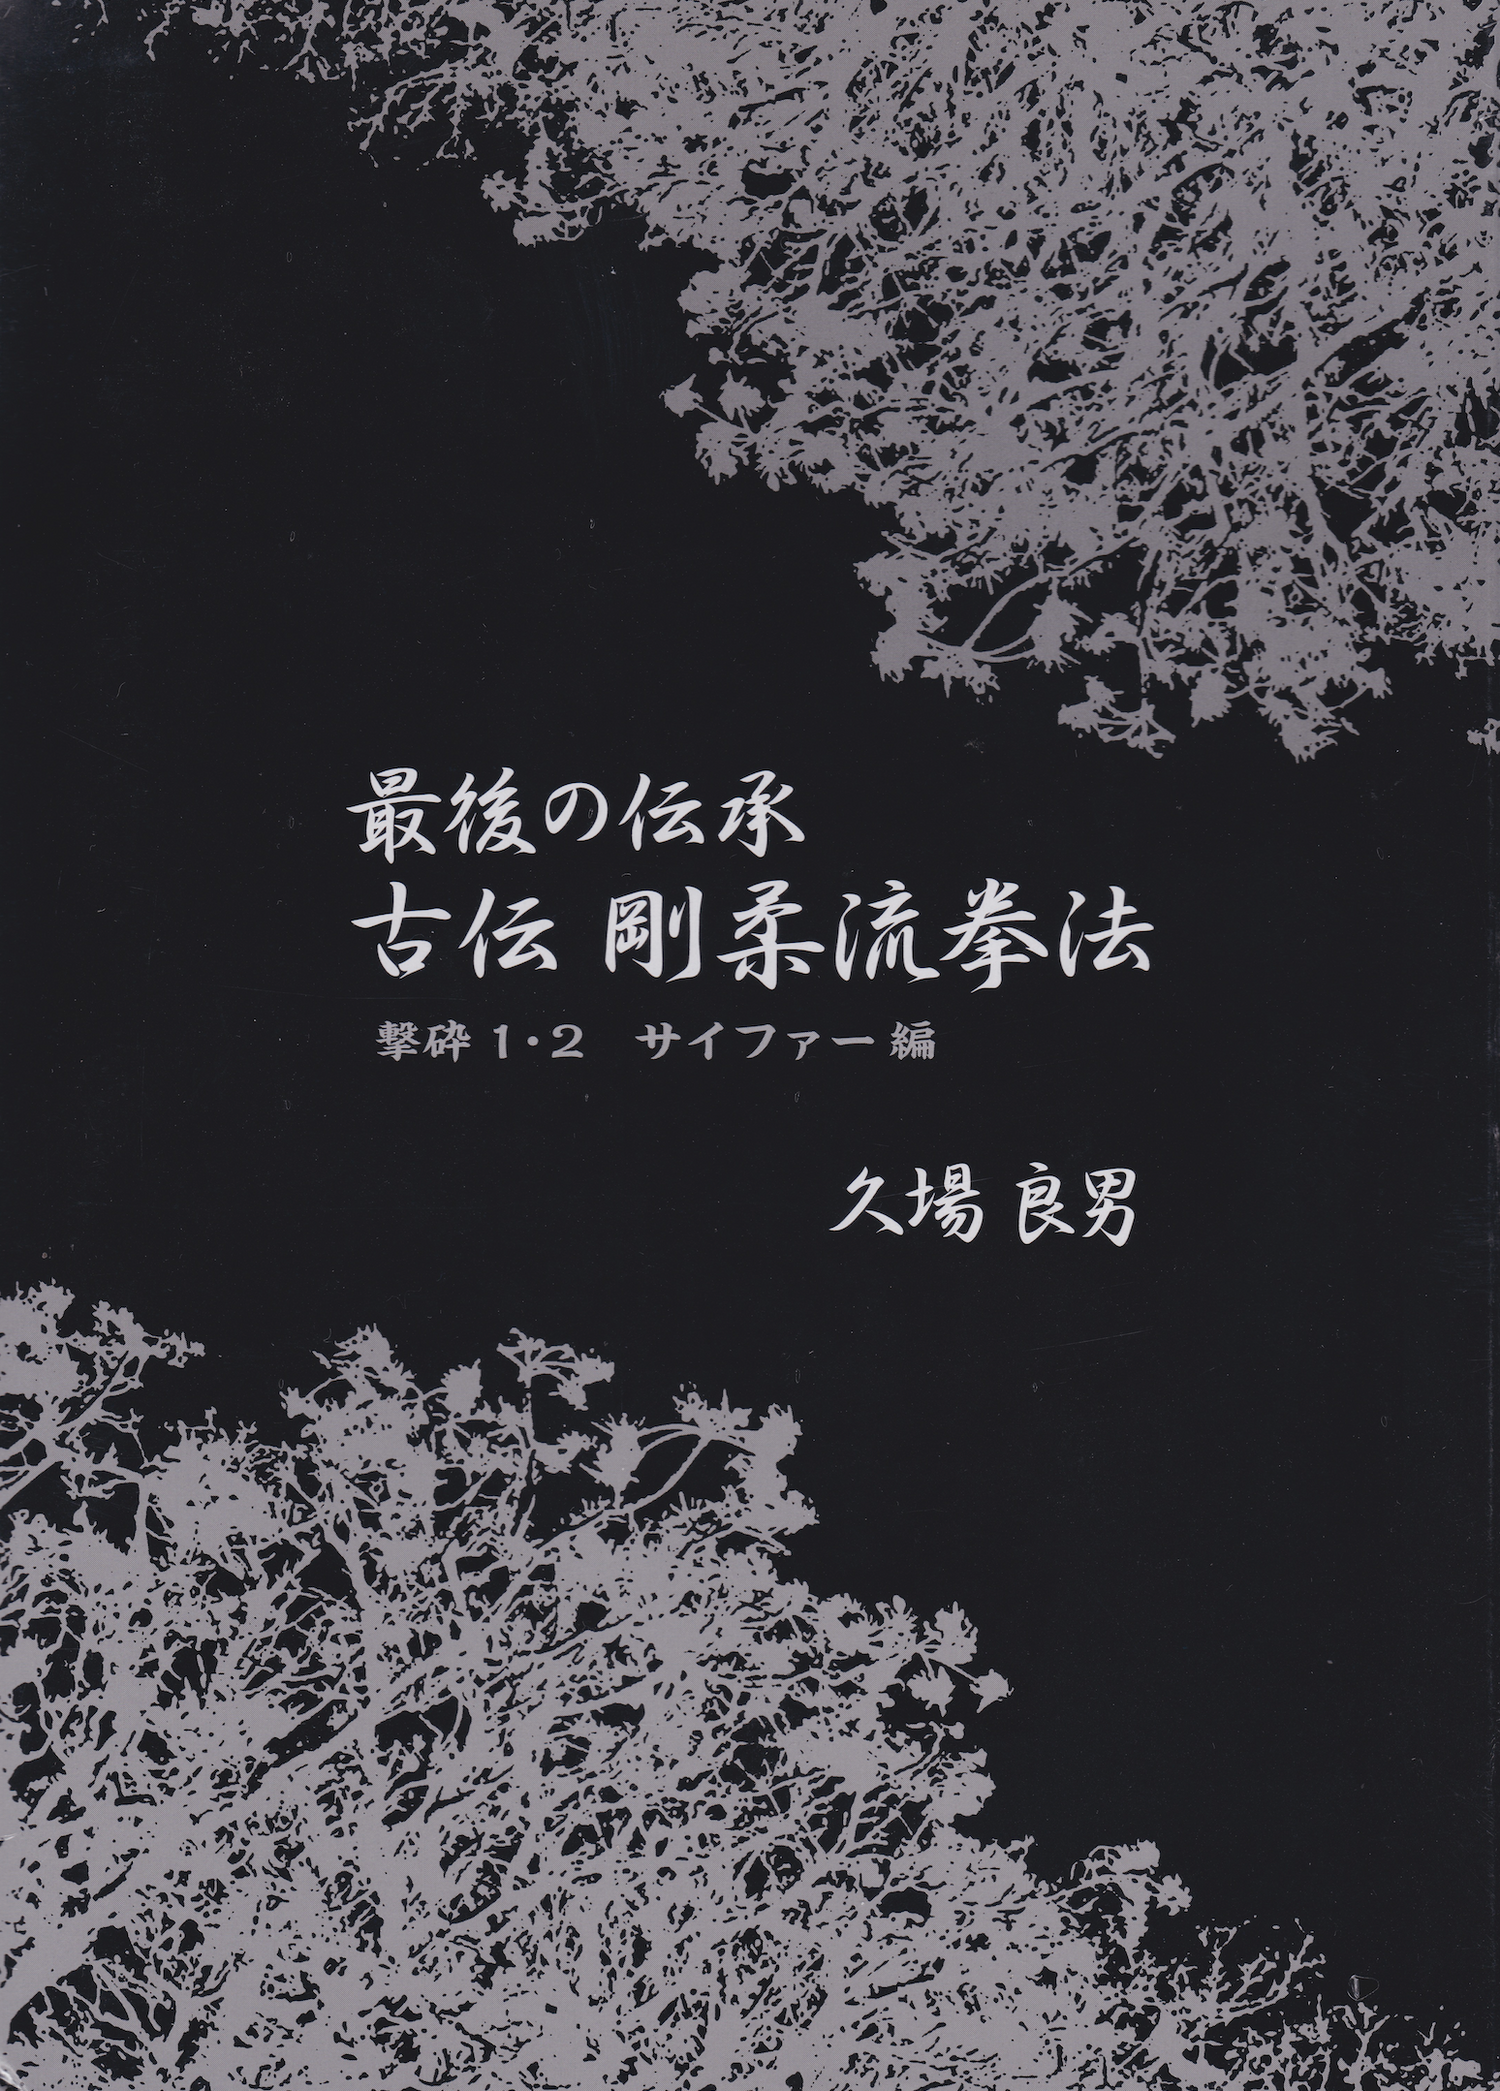 Lógica clásica del último libro y DVD tradicional de Goju-ryu Kempo Vol 1